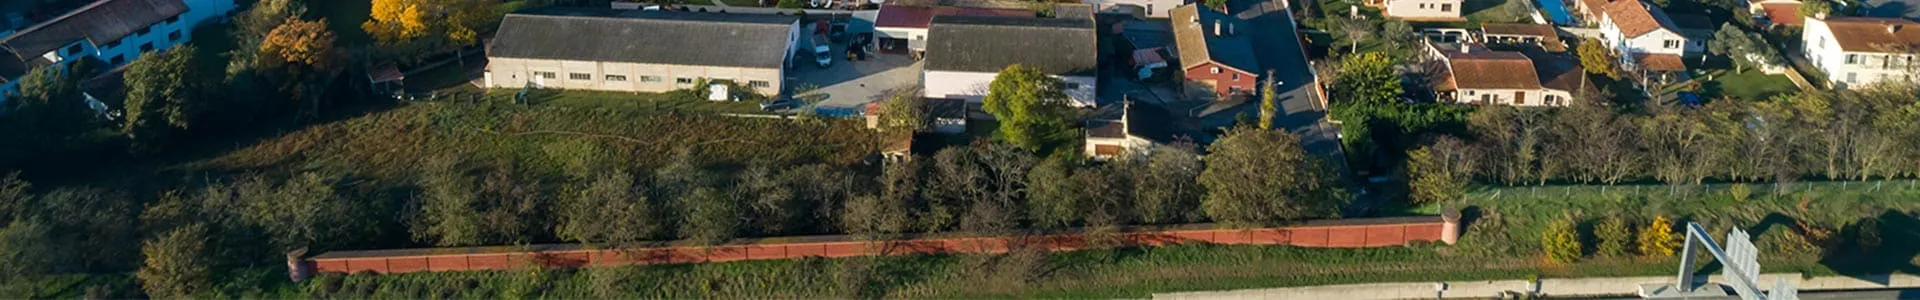 Vue aérienne du quartier autour de la résidence Les Jardins de Salomé